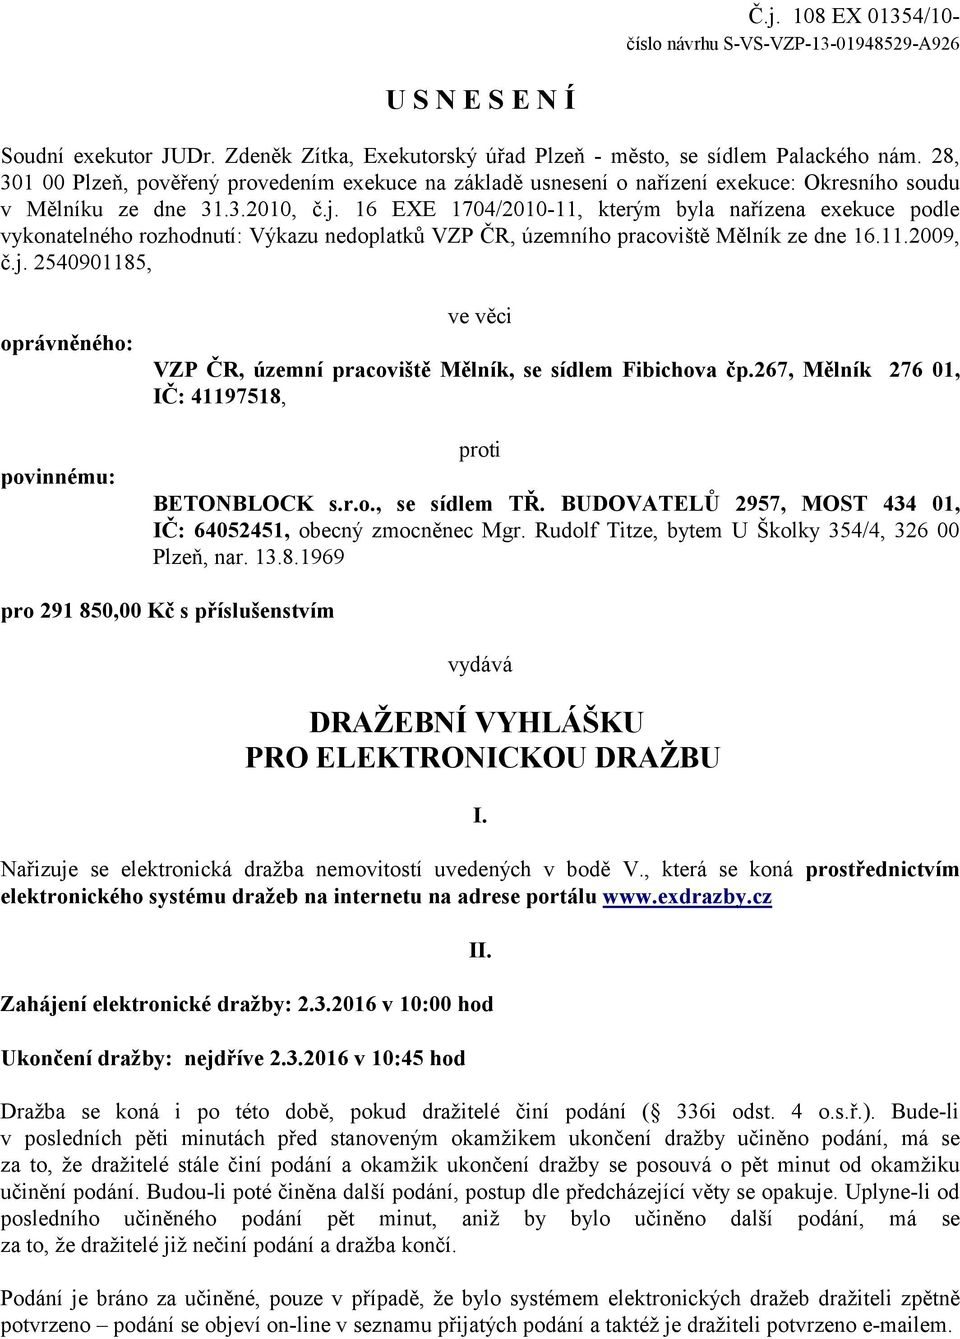 16 EXE 1704/2010-11, kterým byla nařízena exekuce podle vykonatelného rozhodnutí: Výkazu nedoplatků VZP ČR, územního pracoviště Mělník ze dne 16.11.2009, č.j.